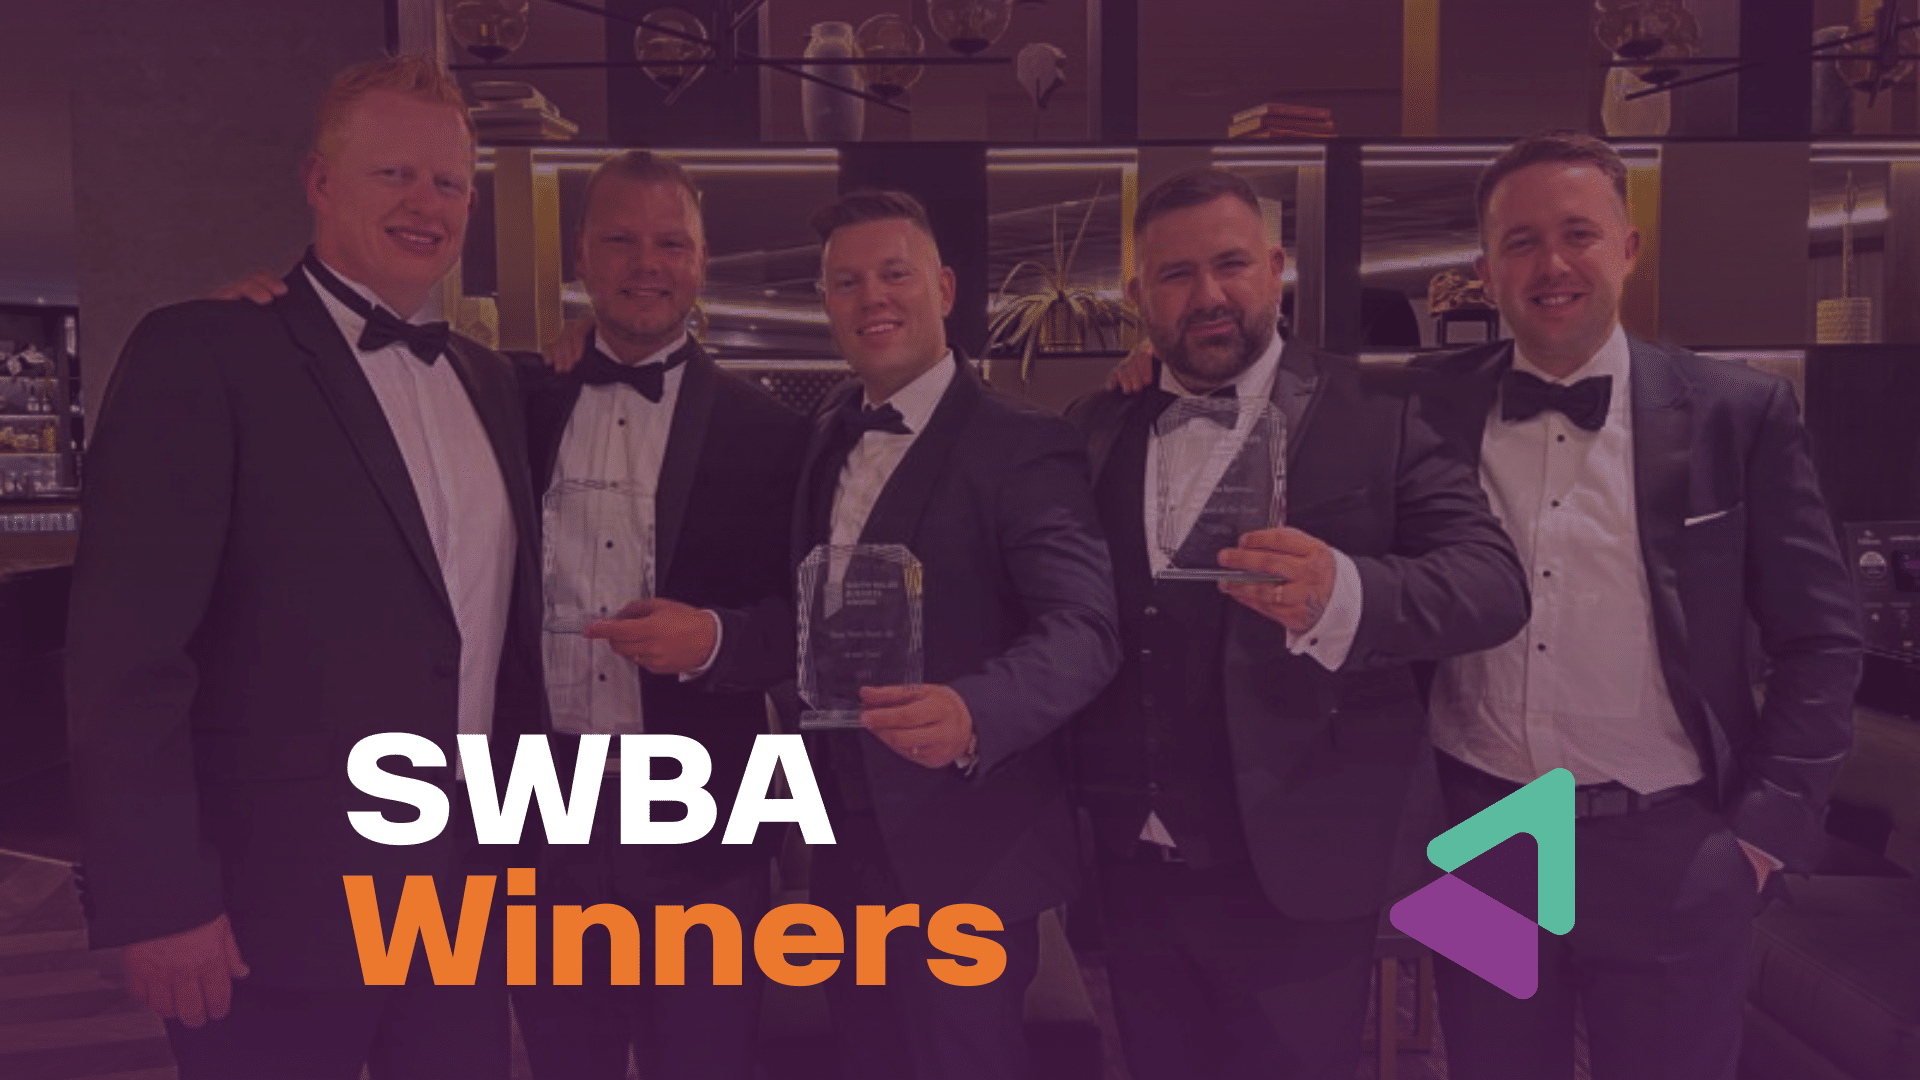 SWBA Winners Image